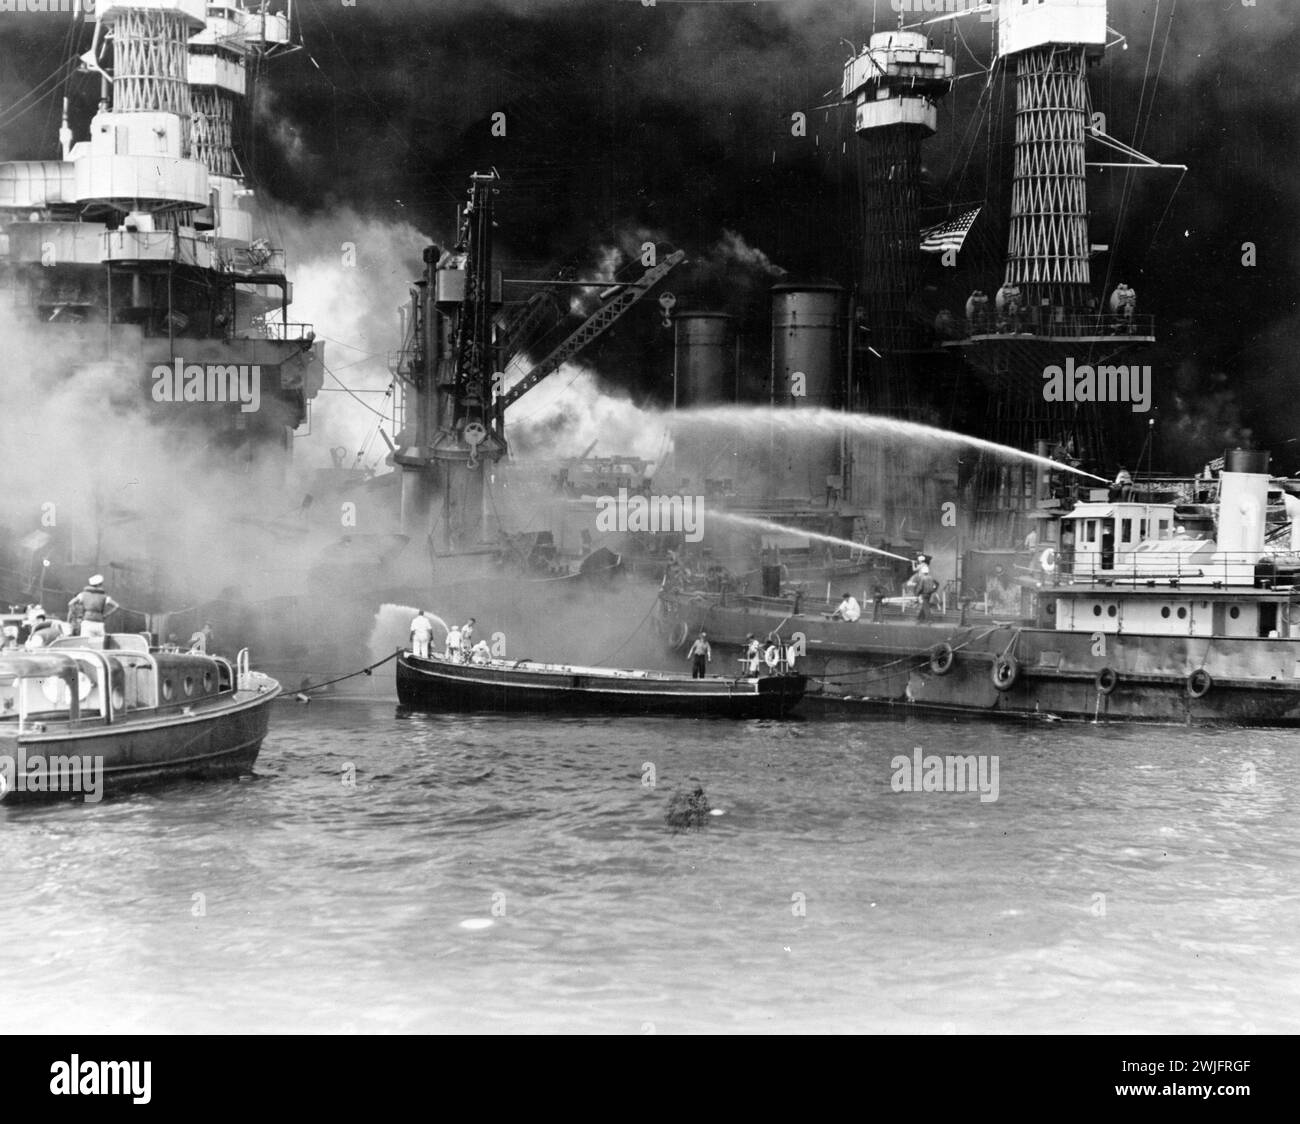 Seconda guerra mondiale - Pearl Harbor, Hawaii, 7 dicembre 1941. USS West Virginia aflame. Ignorando le pericolose possibilità di esplosioni, i marinai americani si trovano a fianco della nave da battaglia in fiamme per combattere meglio le fiamme Foto Stock